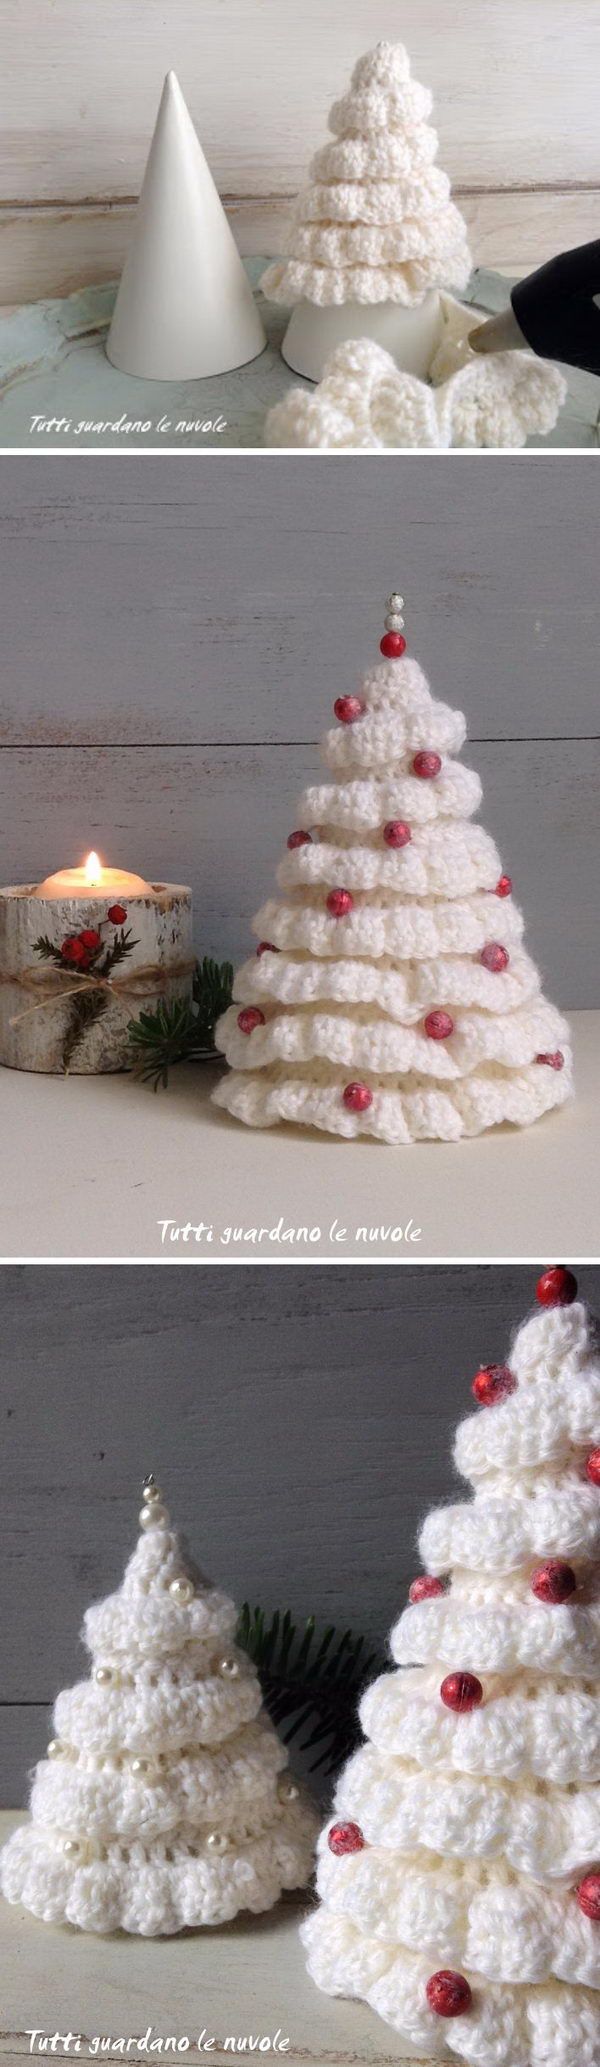 1576156902_987_25-Free-Christmas-Crochet-Patterns-For-Beginners.jpg